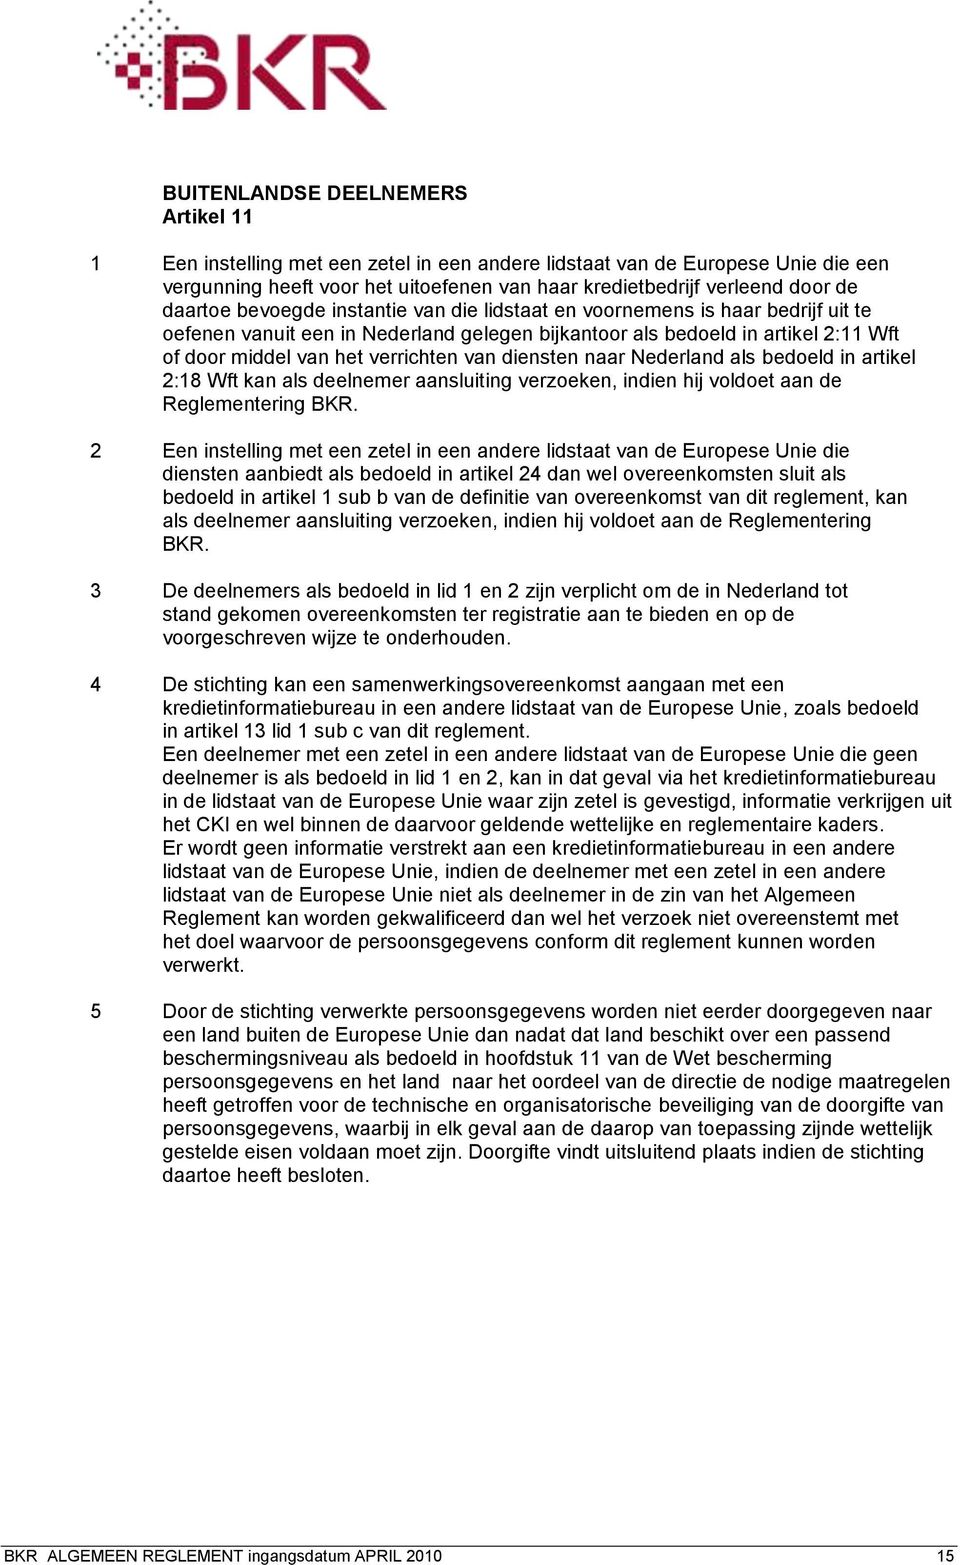 van diensten naar Nederland als bedoeld in artikel 2:18 Wft kan als deelnemer aansluiting verzoeken, indien hij voldoet aan de Reglementering BKR.